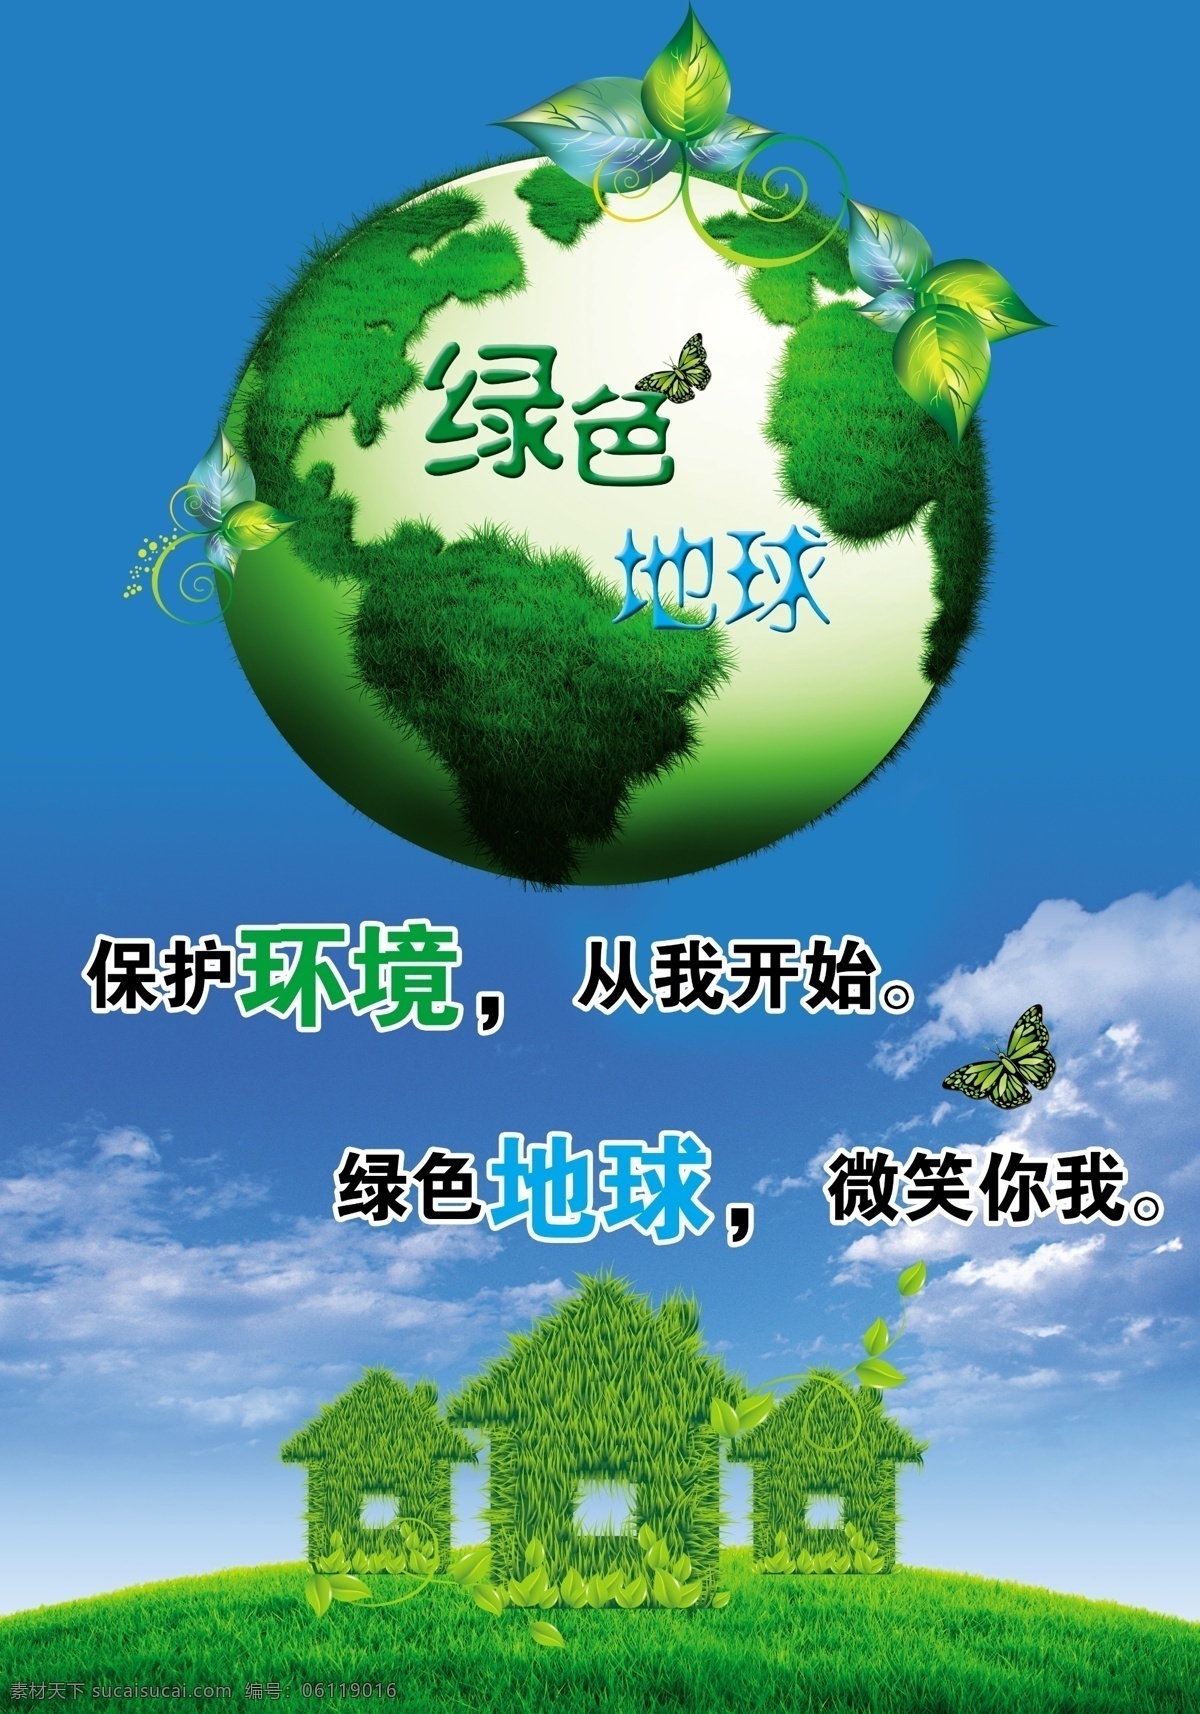 爱护环境海报 环境公益展板 保护环境 爱护环境 绿色生活 低碳生活 让城市多点绿 绿色低碳 节能 环保 环境日